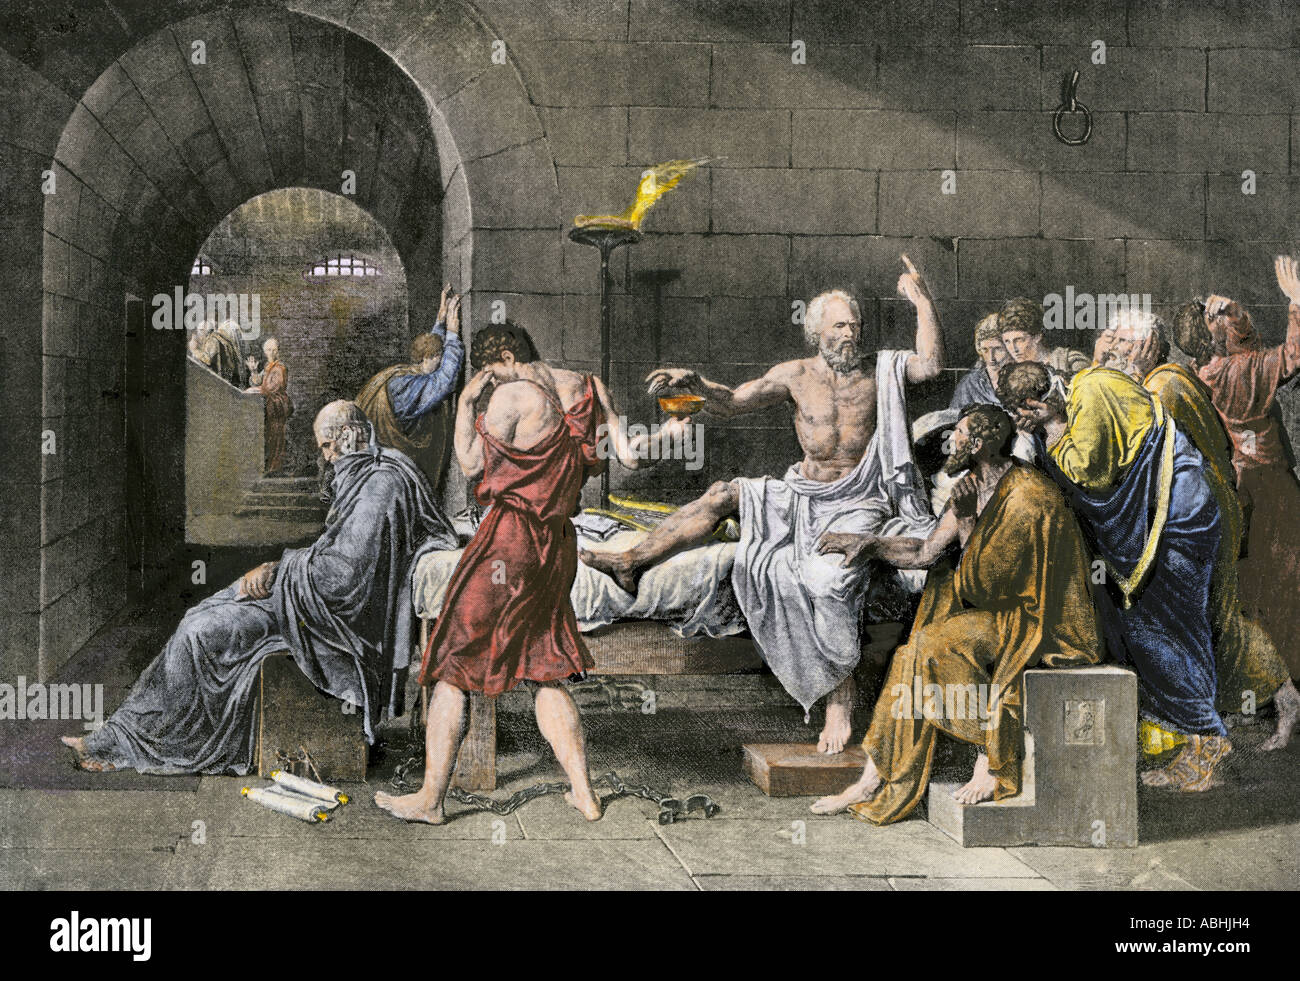 Le suicide de Socrate en buvant de la pruche venimeux. À la main, gravure d'illustration de Jacques Louis David Banque D'Images